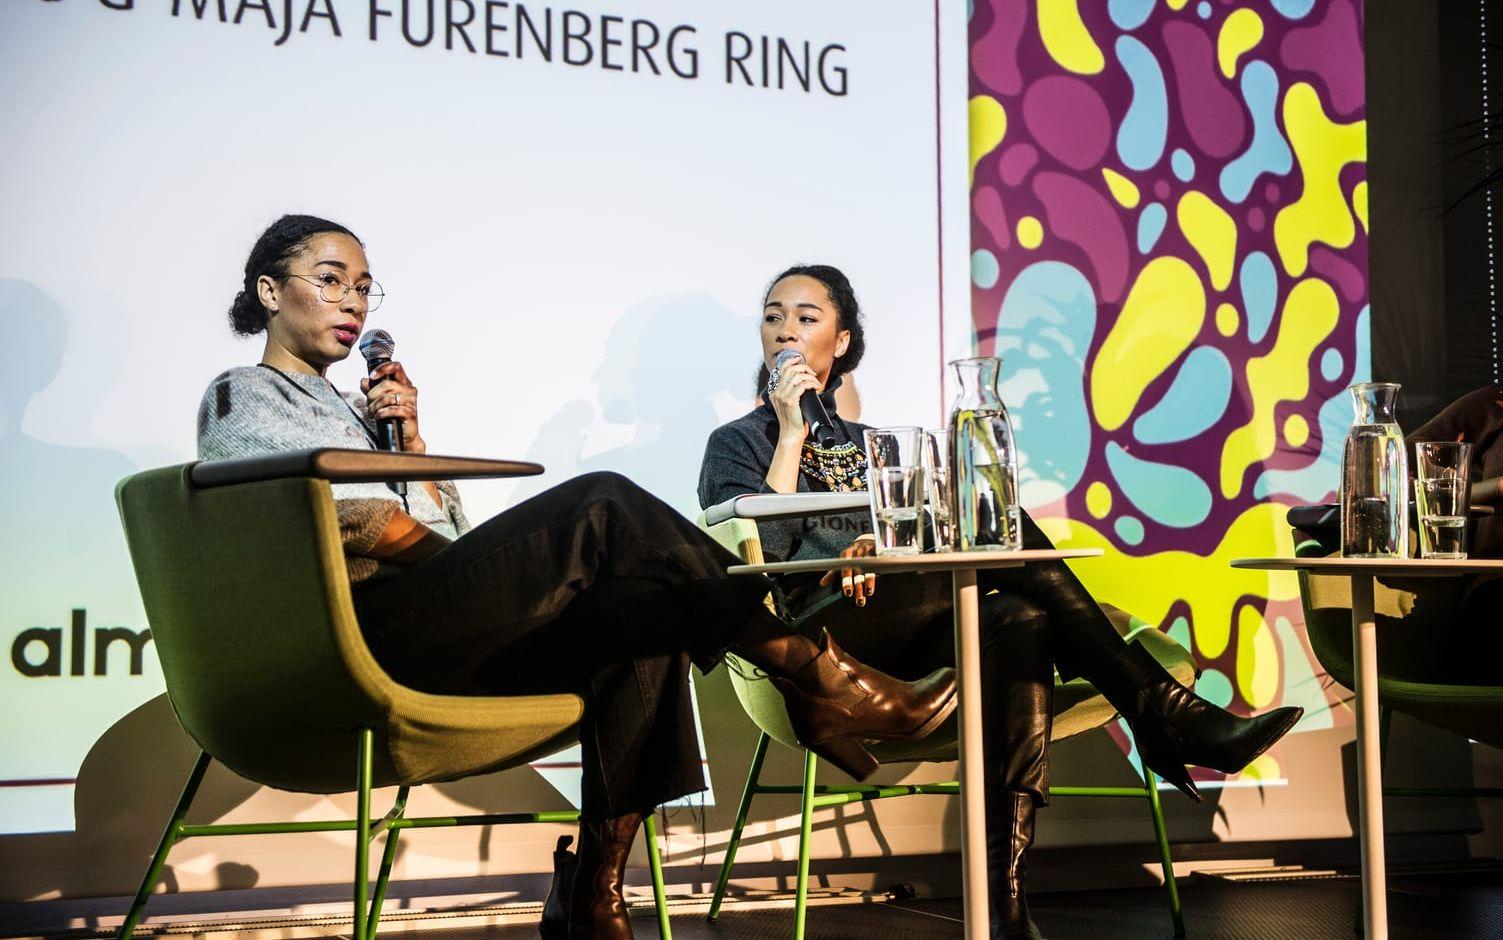 Tvillingsystrarna Atta Ring och Maja Furenberg Ring använde sina föräldraledigheter att bygga upp kundbasen till Studio In.